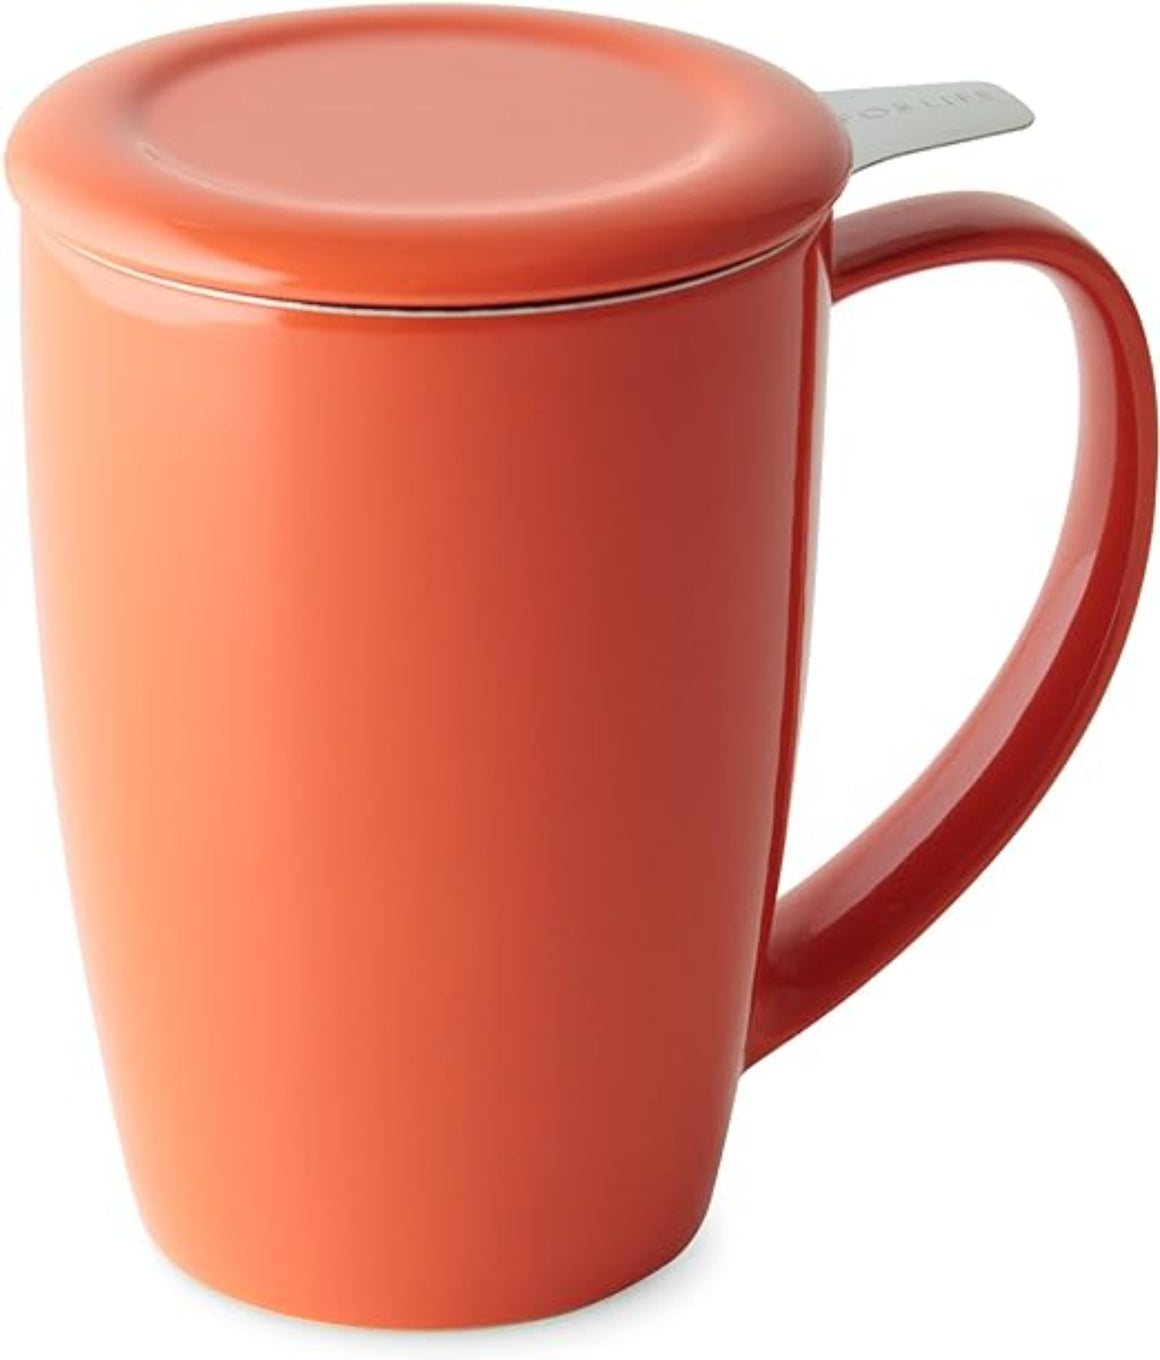 ForLife Curve Tall Tea Mug (6 colors)